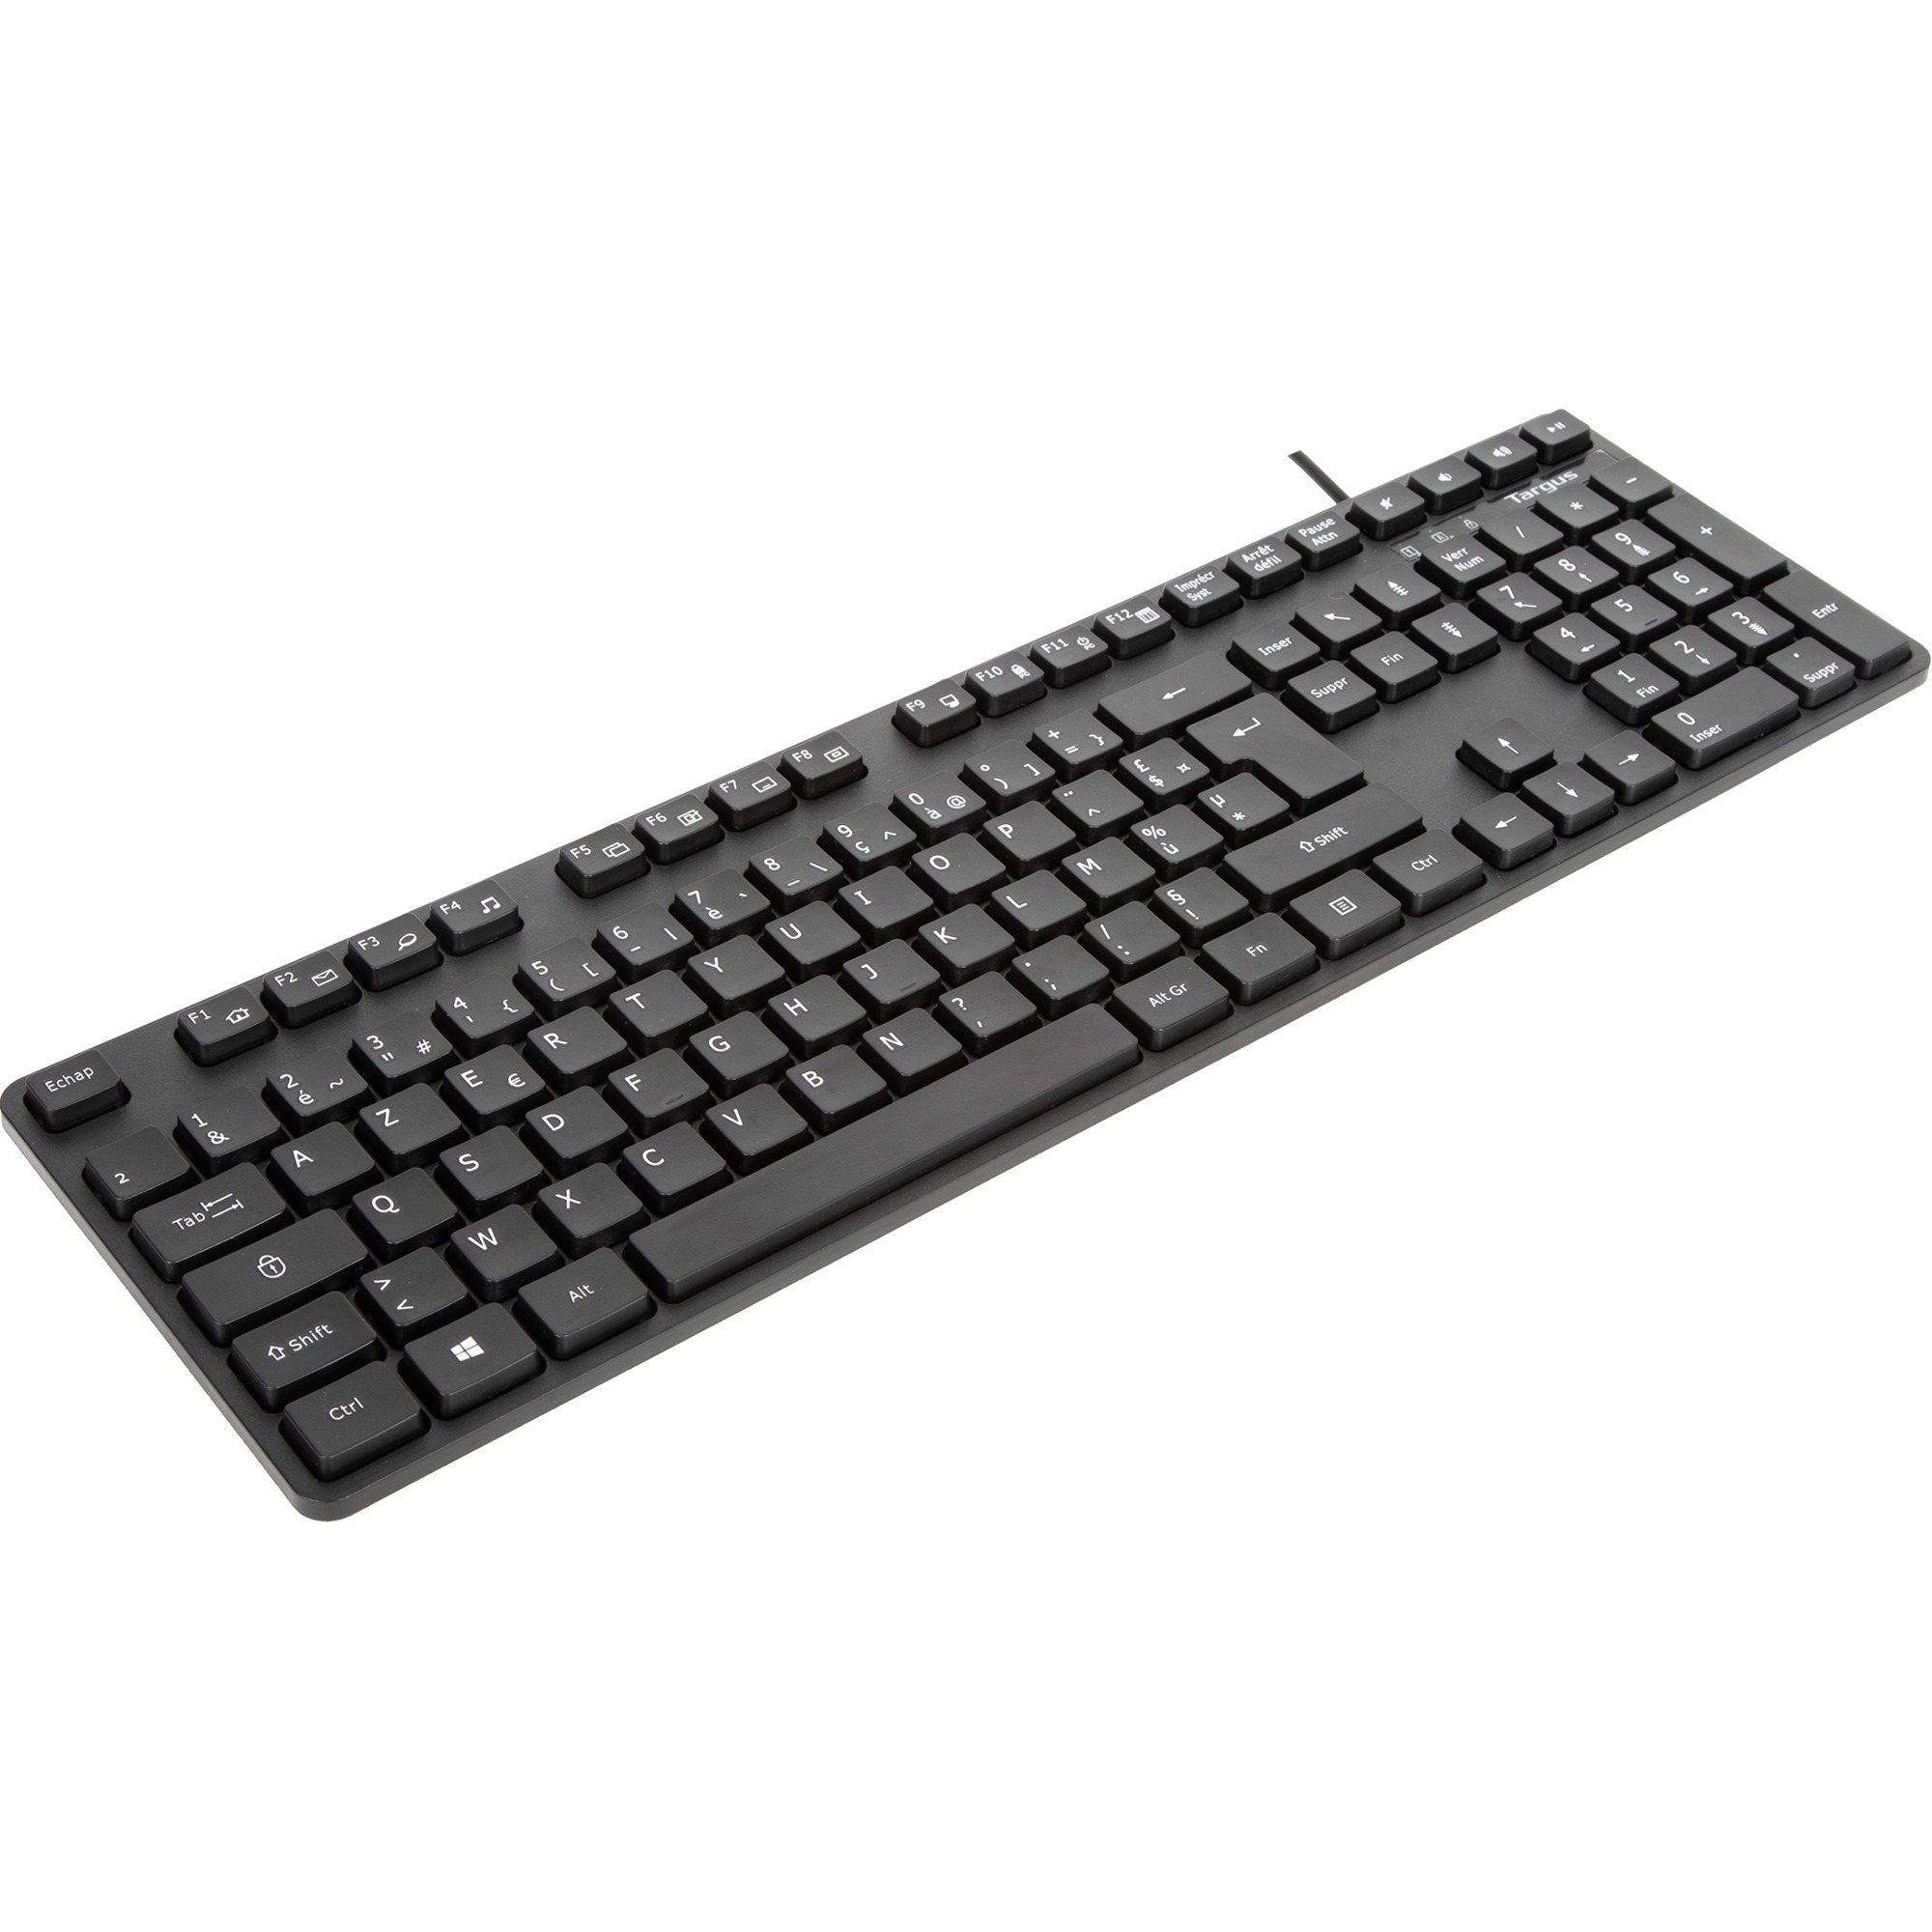 Image of Alternate - Kabelgebundene USB-Tastatur online einkaufen bei Alternate